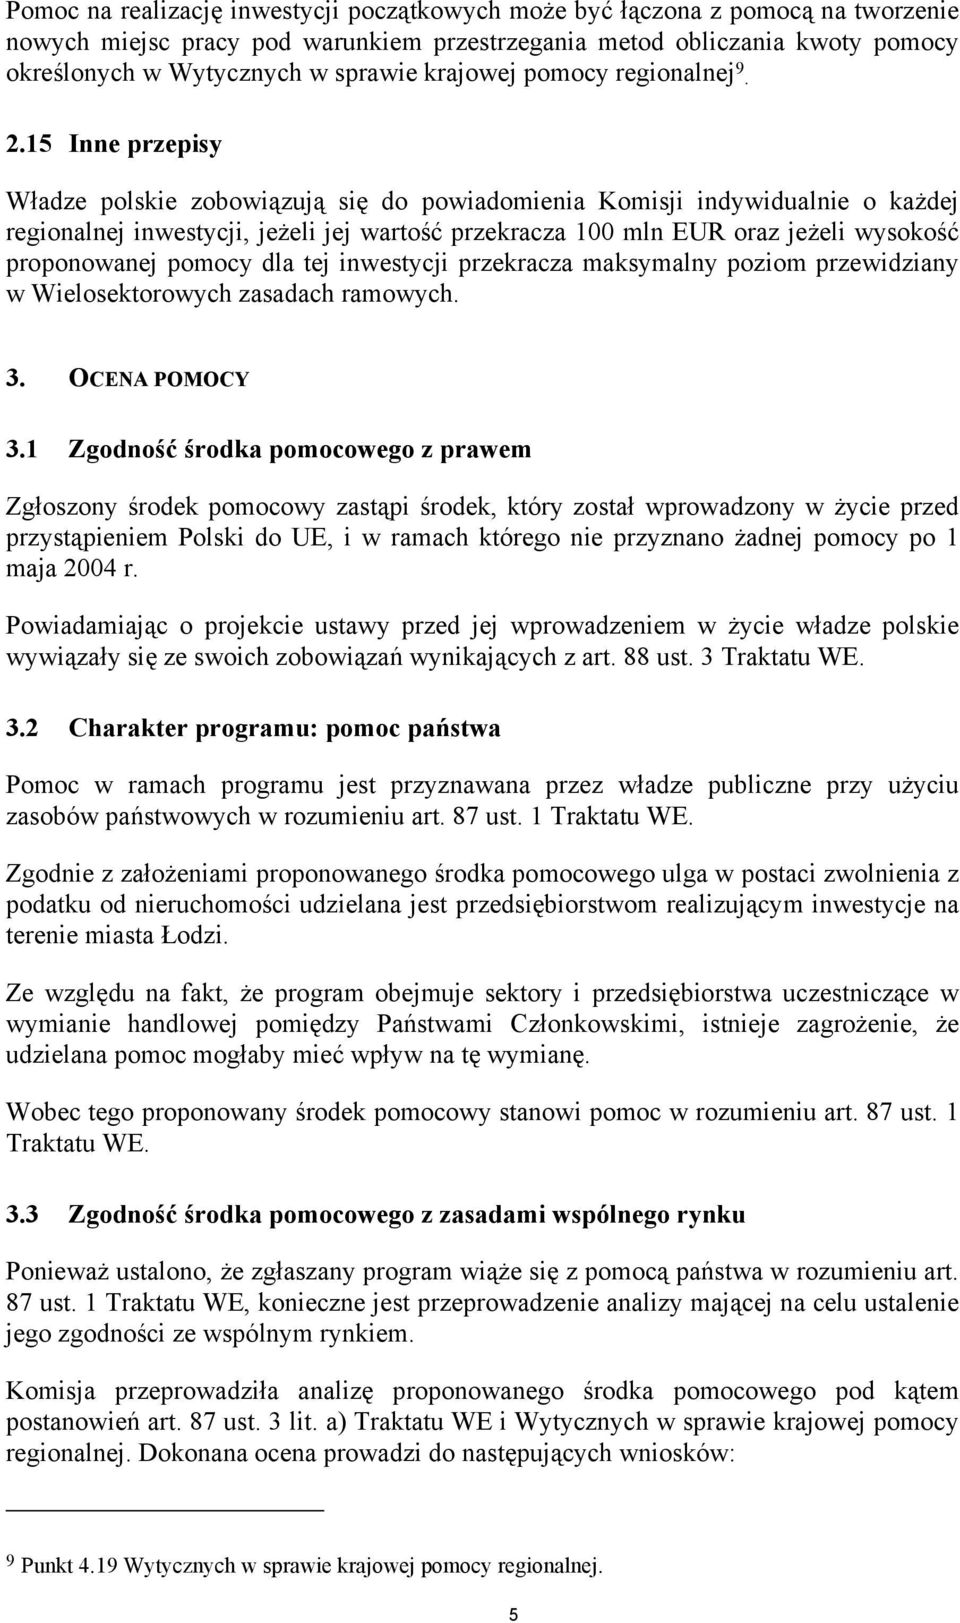 15 Inne przepisy Władze polskie zobowiązują się do powiadomienia Komisji indywidualnie o każdej regionalnej inwestycji, jeżeli jej wartość przekracza 100 mln EUR oraz jeżeli wysokość proponowanej